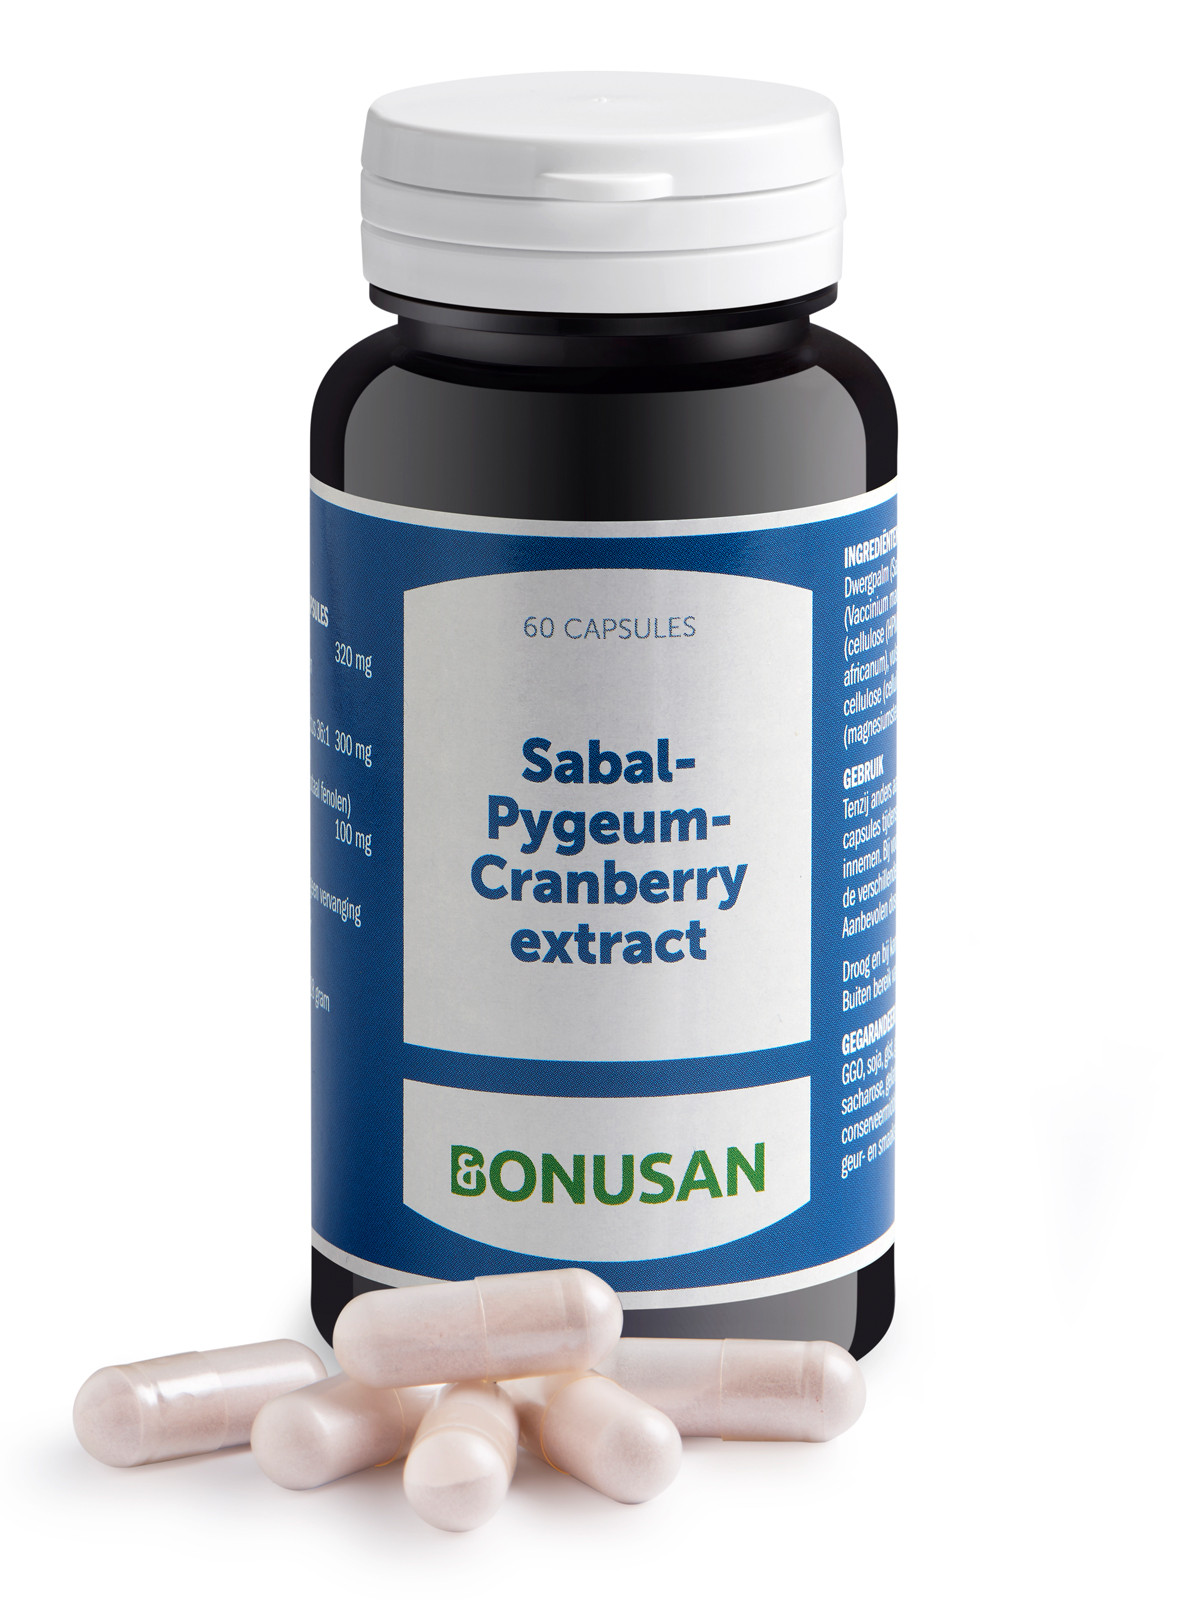 Bonusan - Sabal-Pygeum Cranberry extract